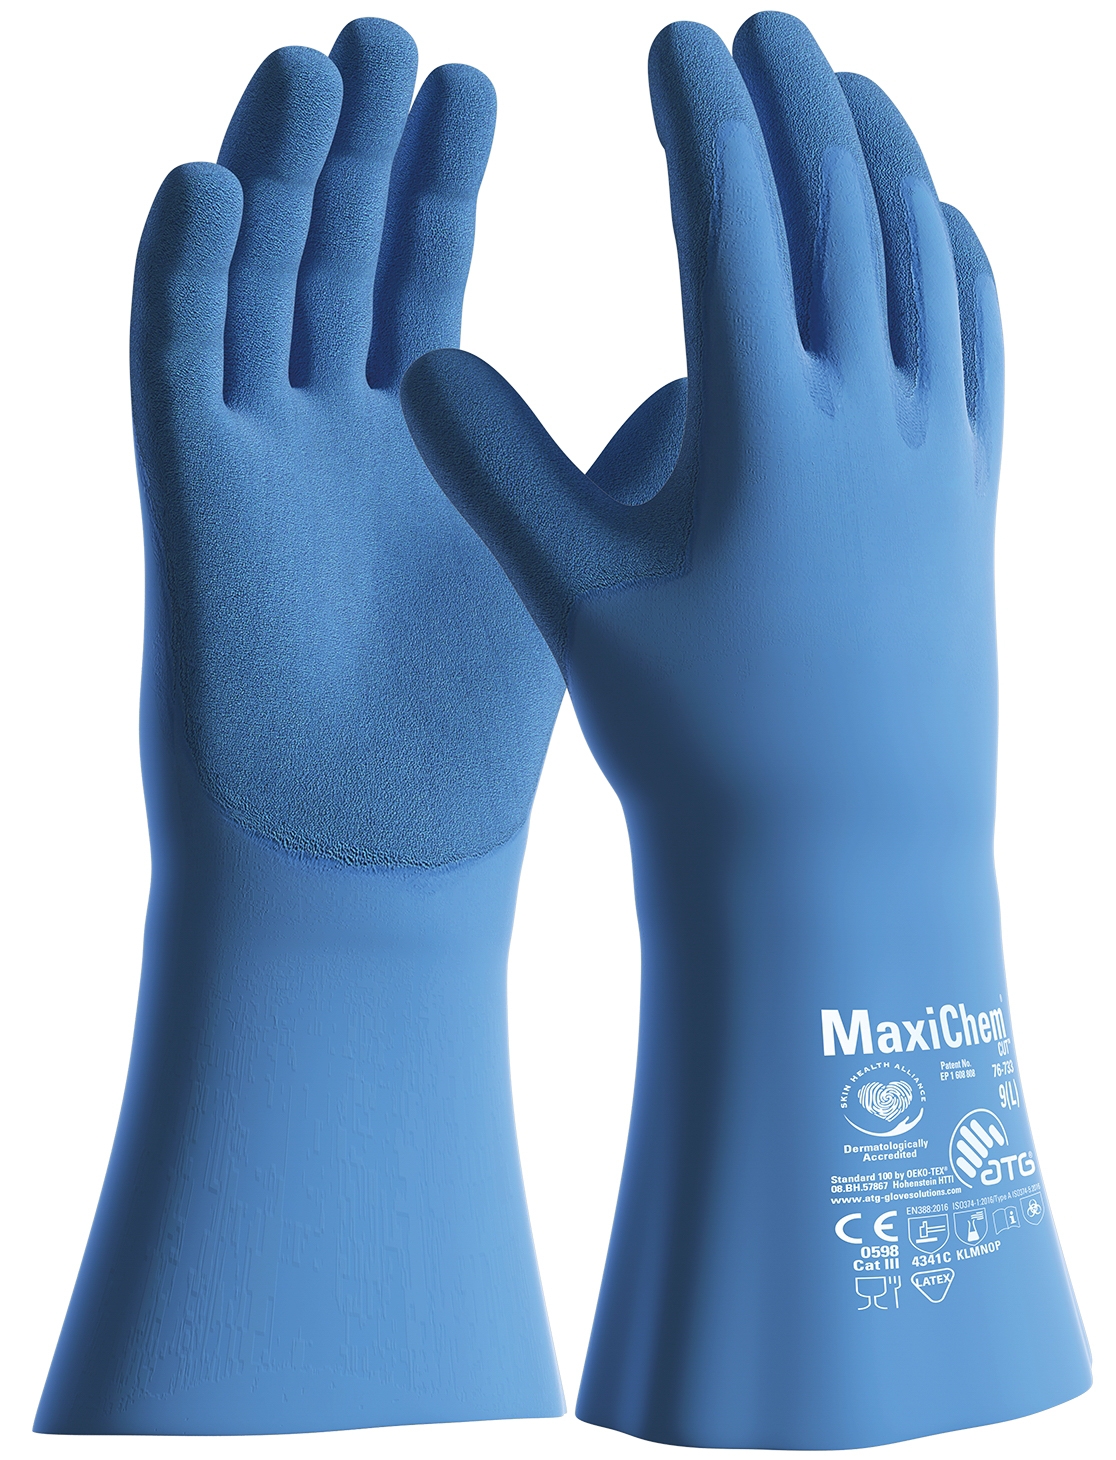 MaxiChem® Cut™ Chemikalienschutz-Handschuhe (76-733) in Blau, Größe 8